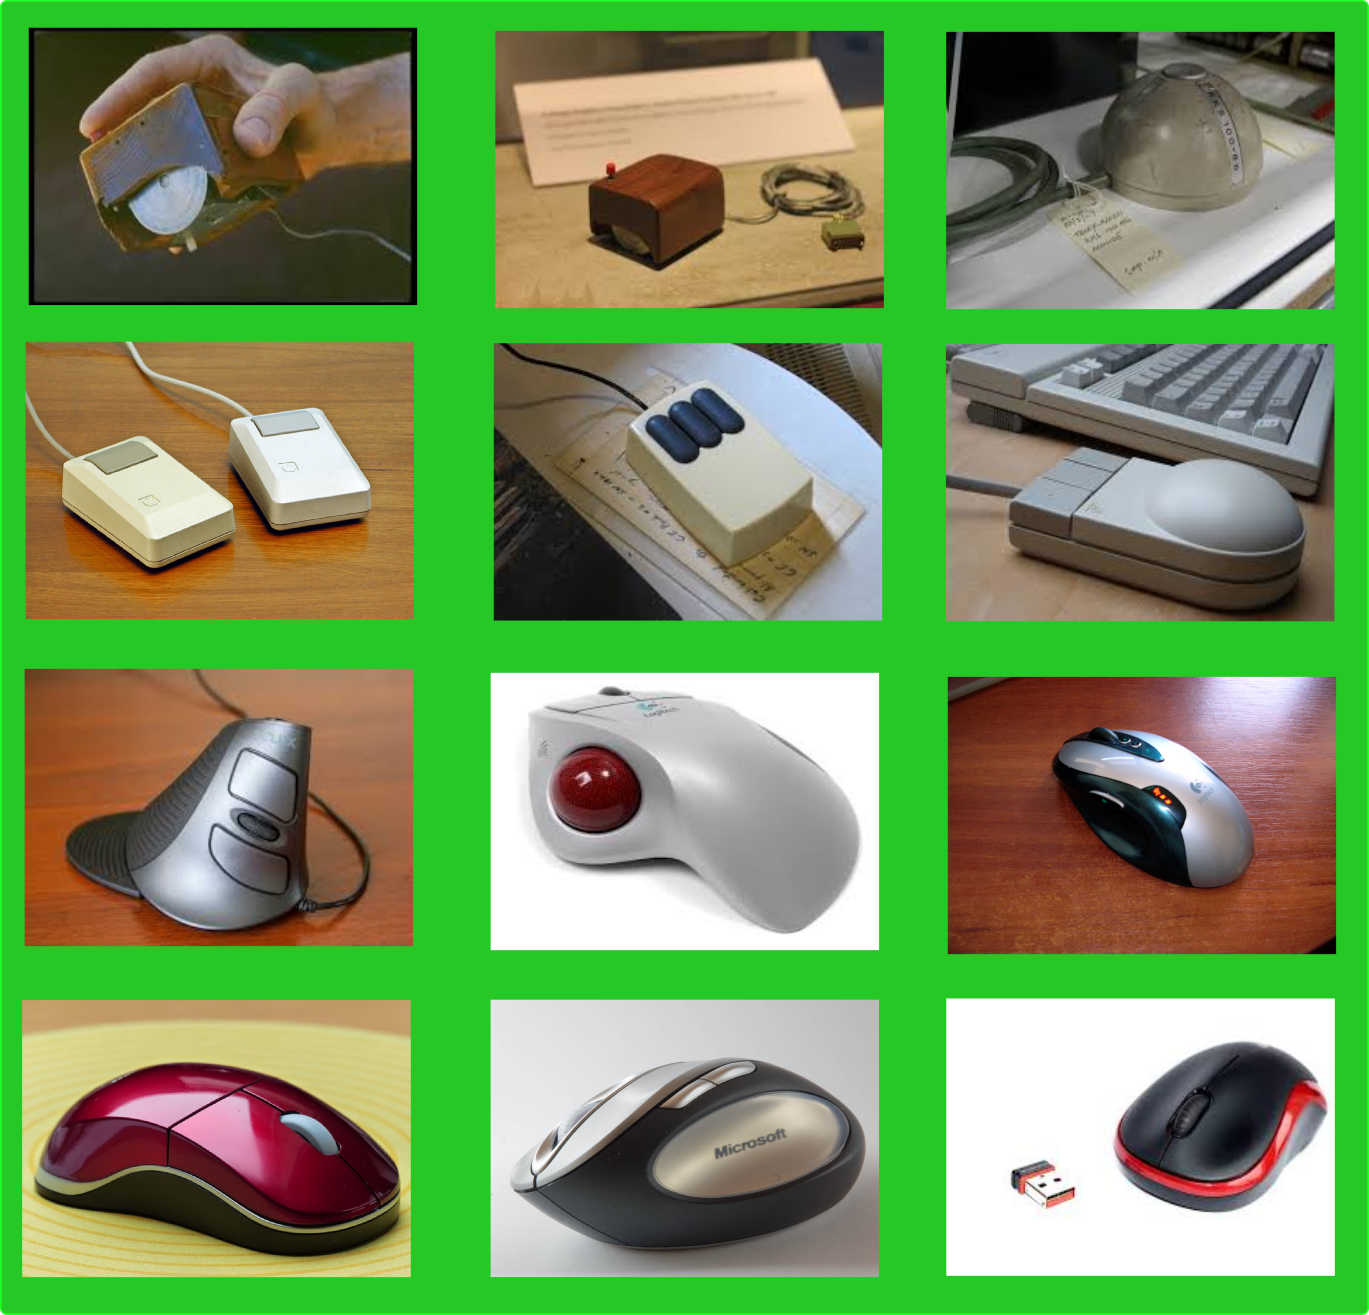 Sejarah Mouse: Dari Trackball Hingga Sensor Optik